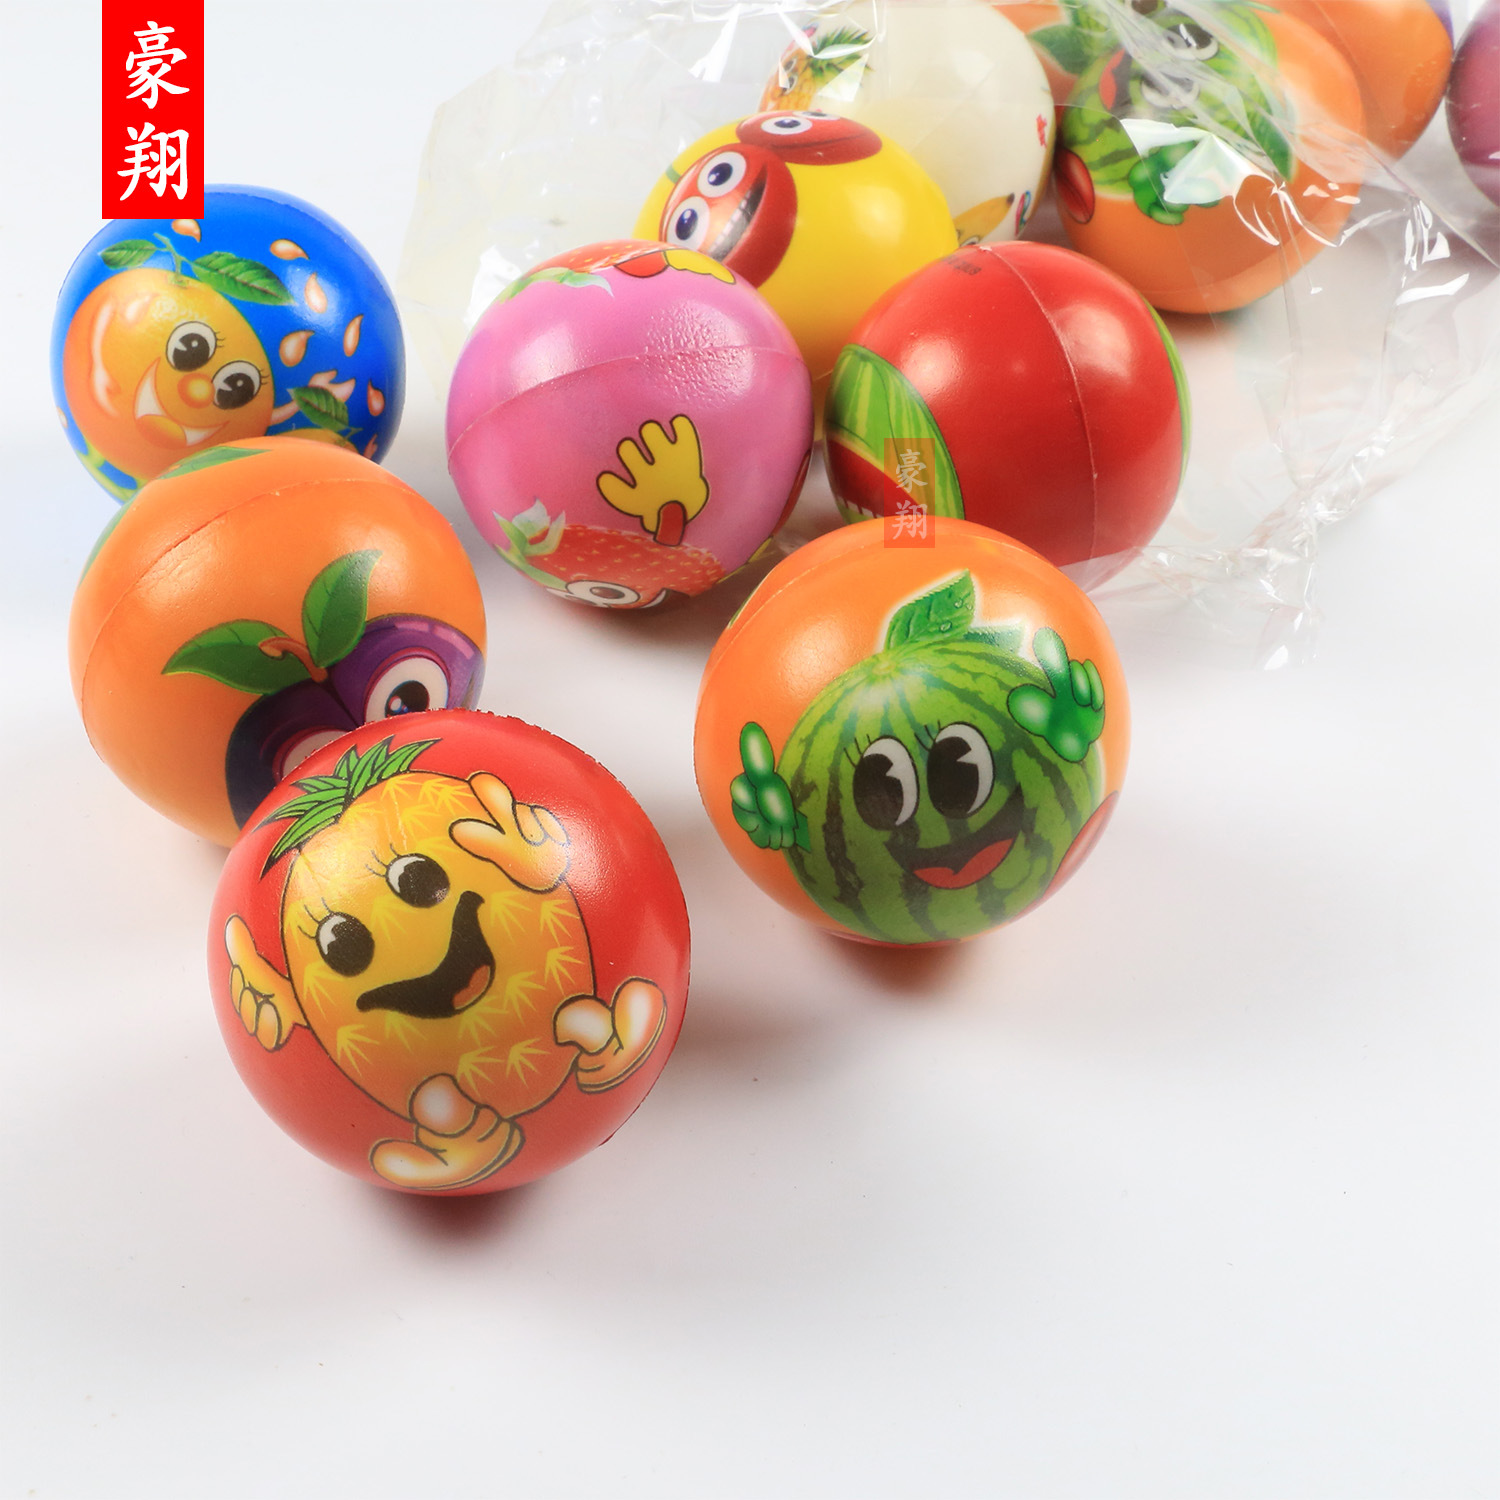 63mm水果表情压力球PU球批发笑脸发泡儿童益智玩具海绵发泄球厂家